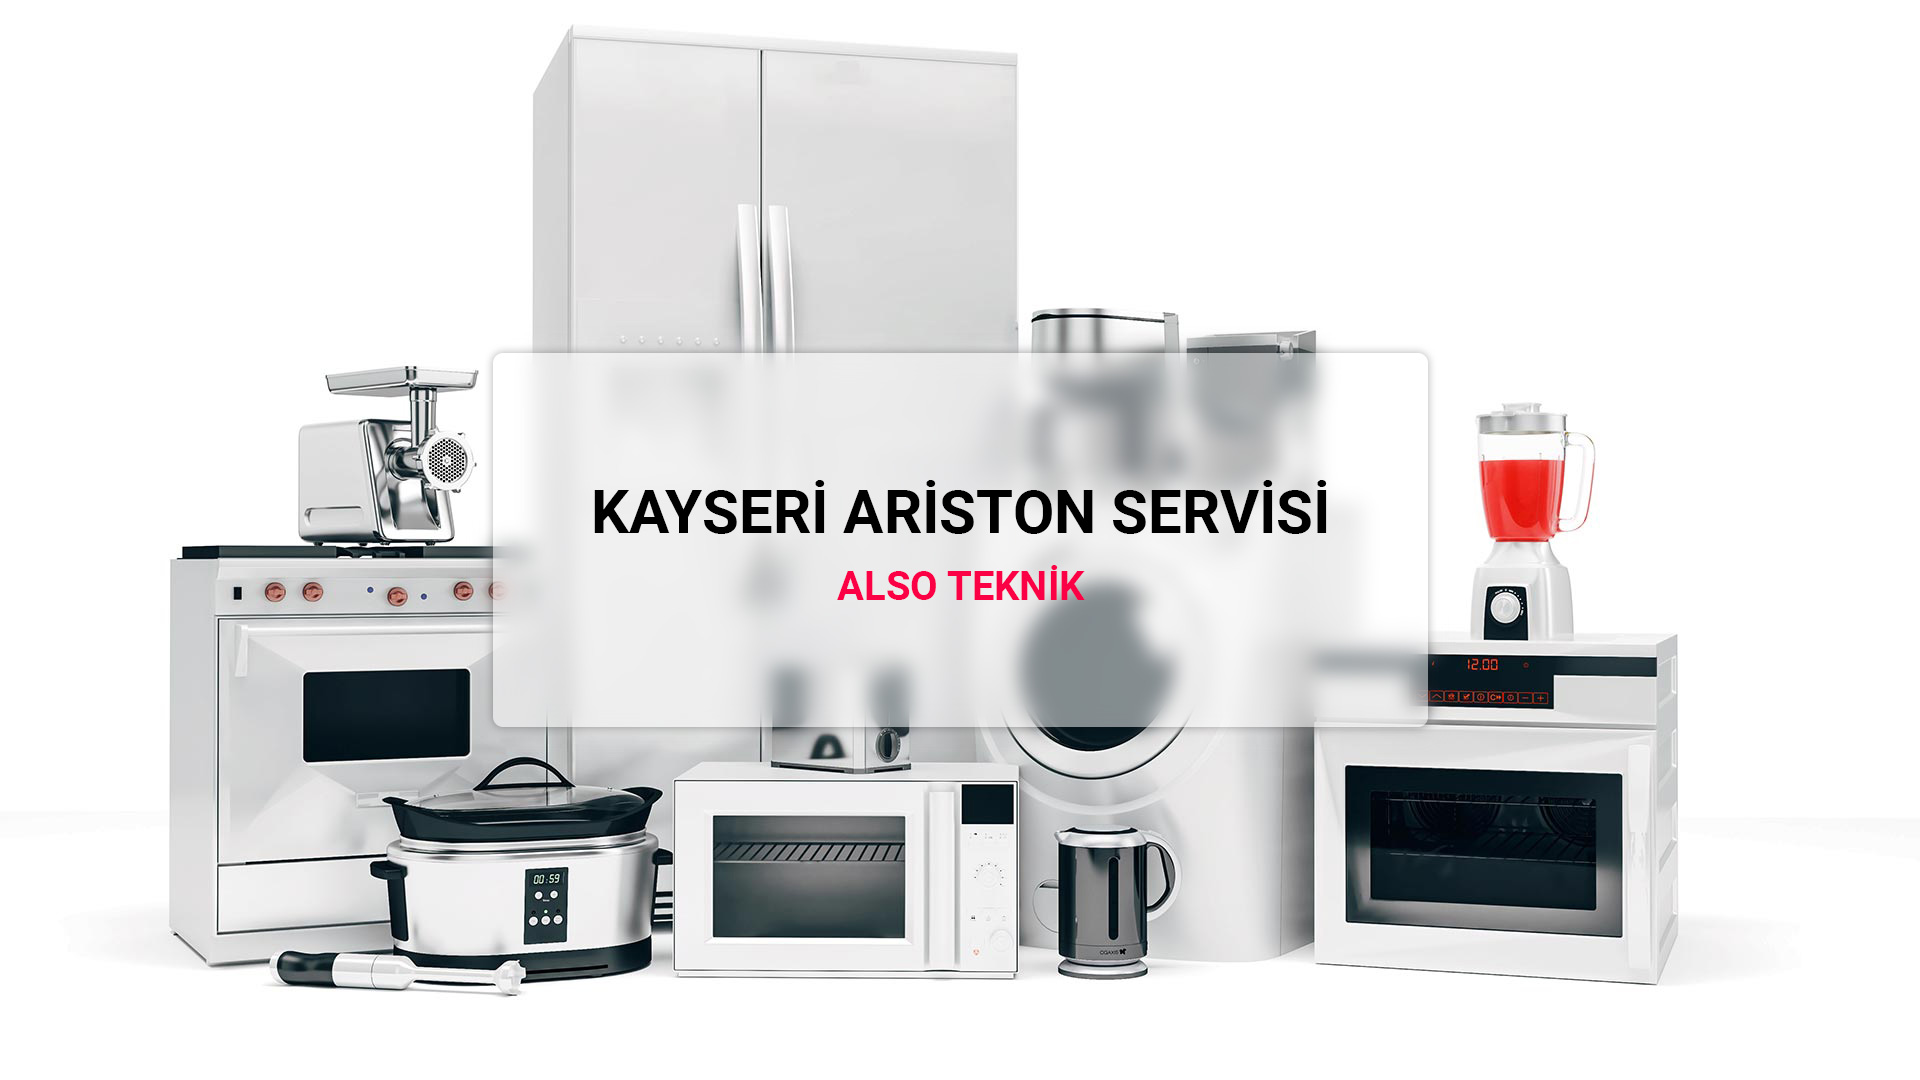 Kayseri Ariston Servisi